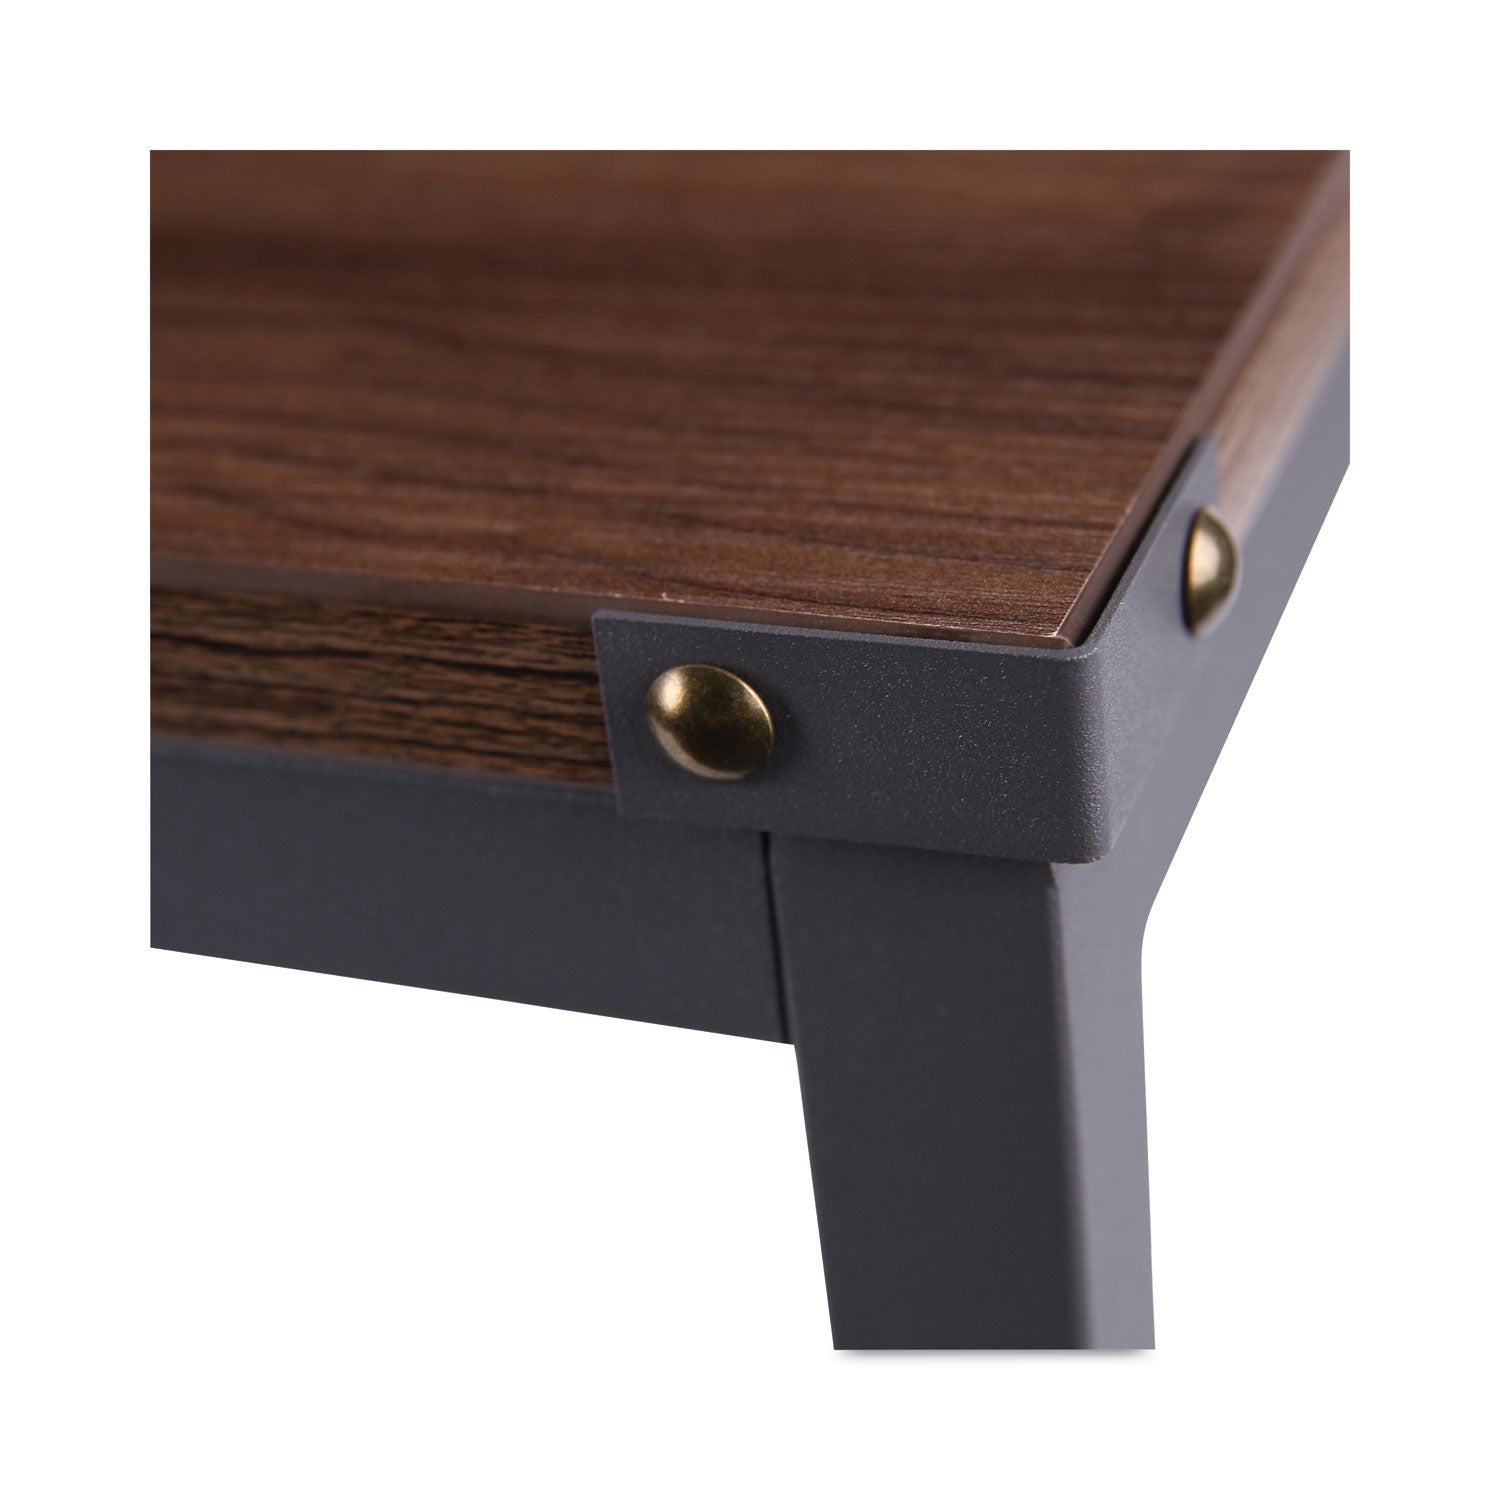 industrial-series-table-desk-4725-x-2363-x-295-modern-walnut_aleltd4824wa - 4